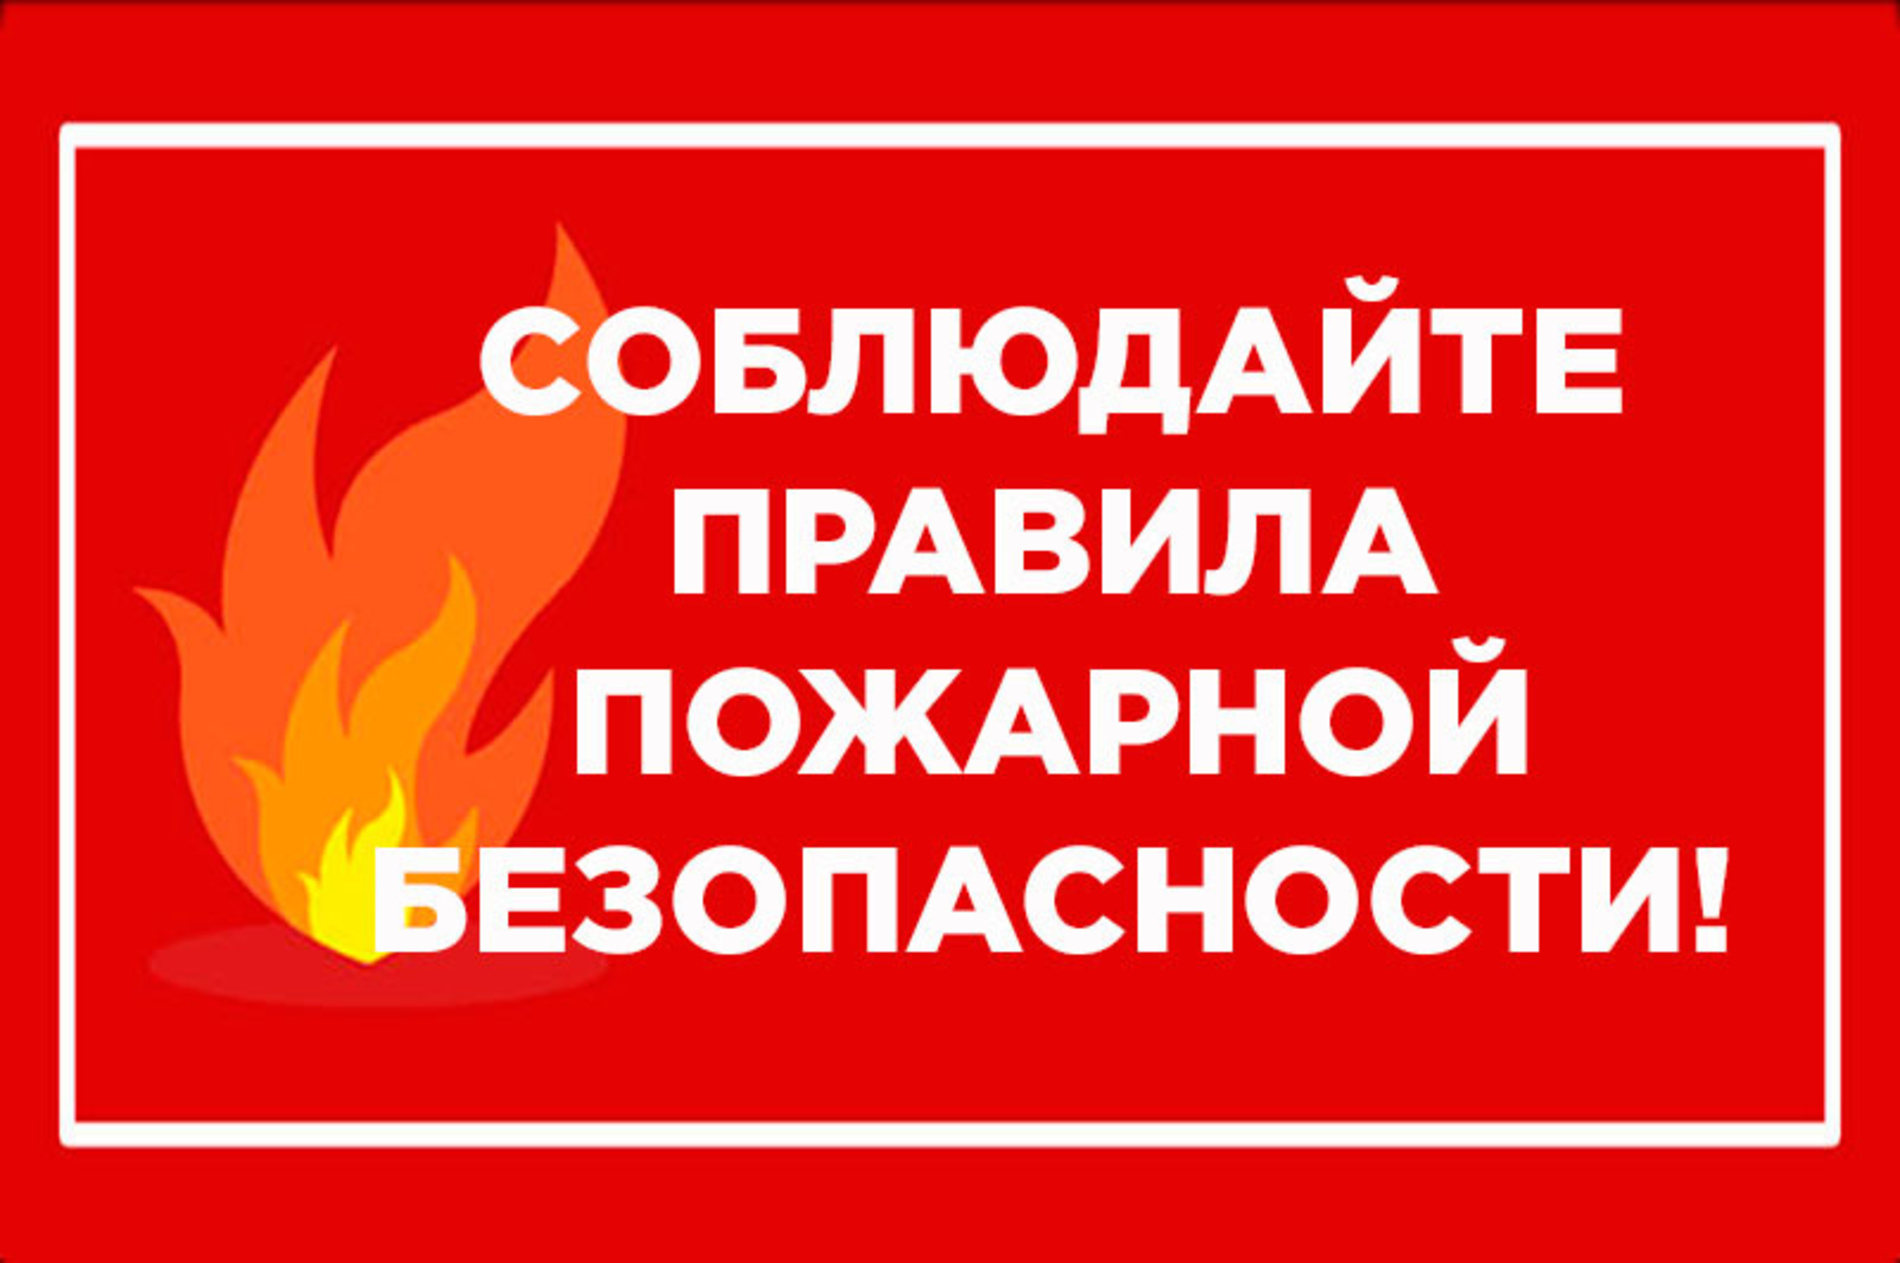 О введении особого противопожарного режима на территории Богучанского района Красноярского края.